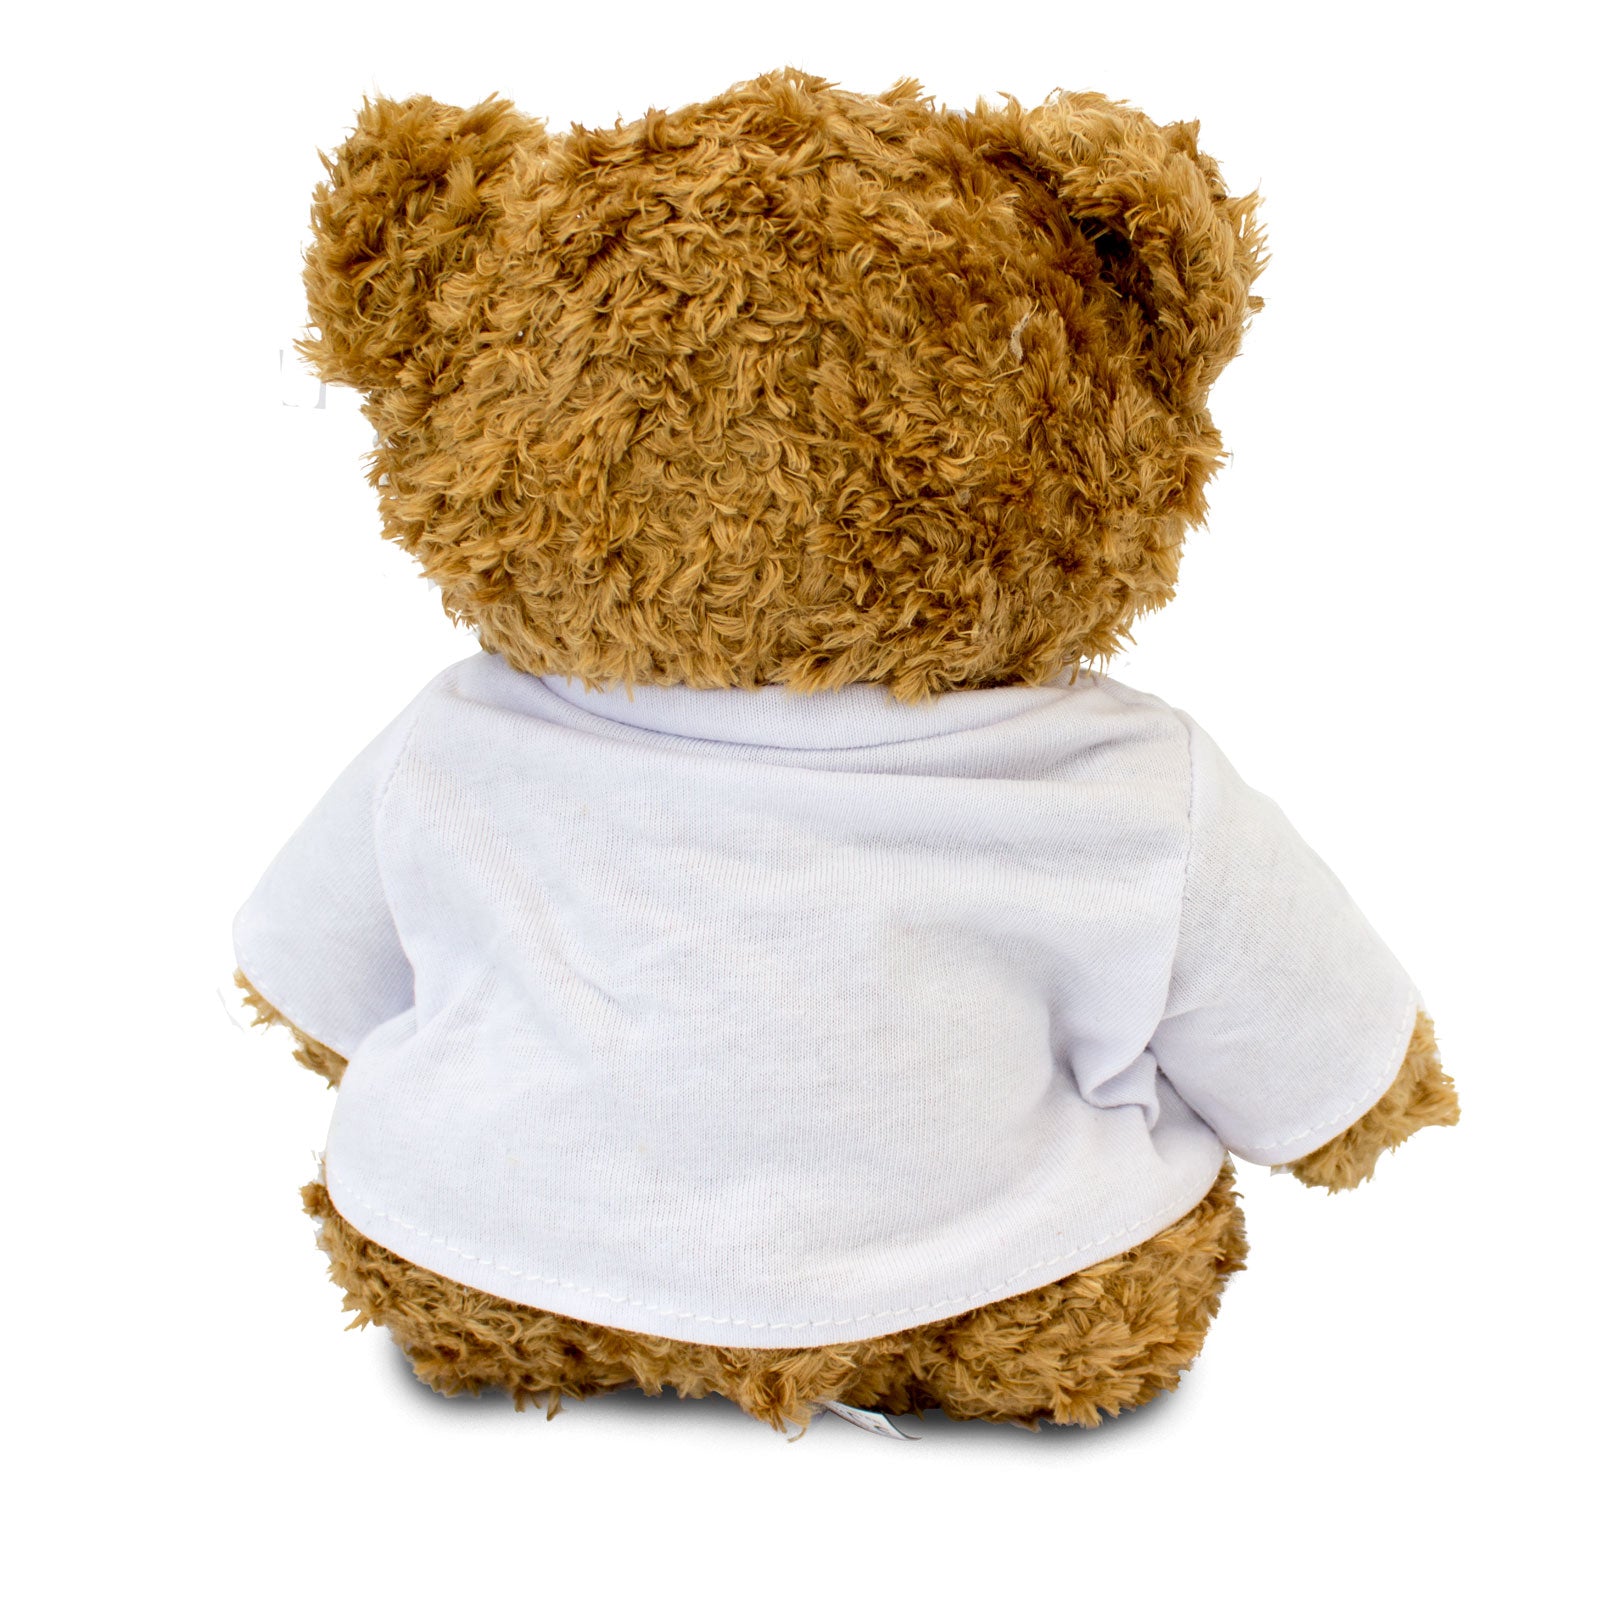 I Love Susan - Teddy Bear